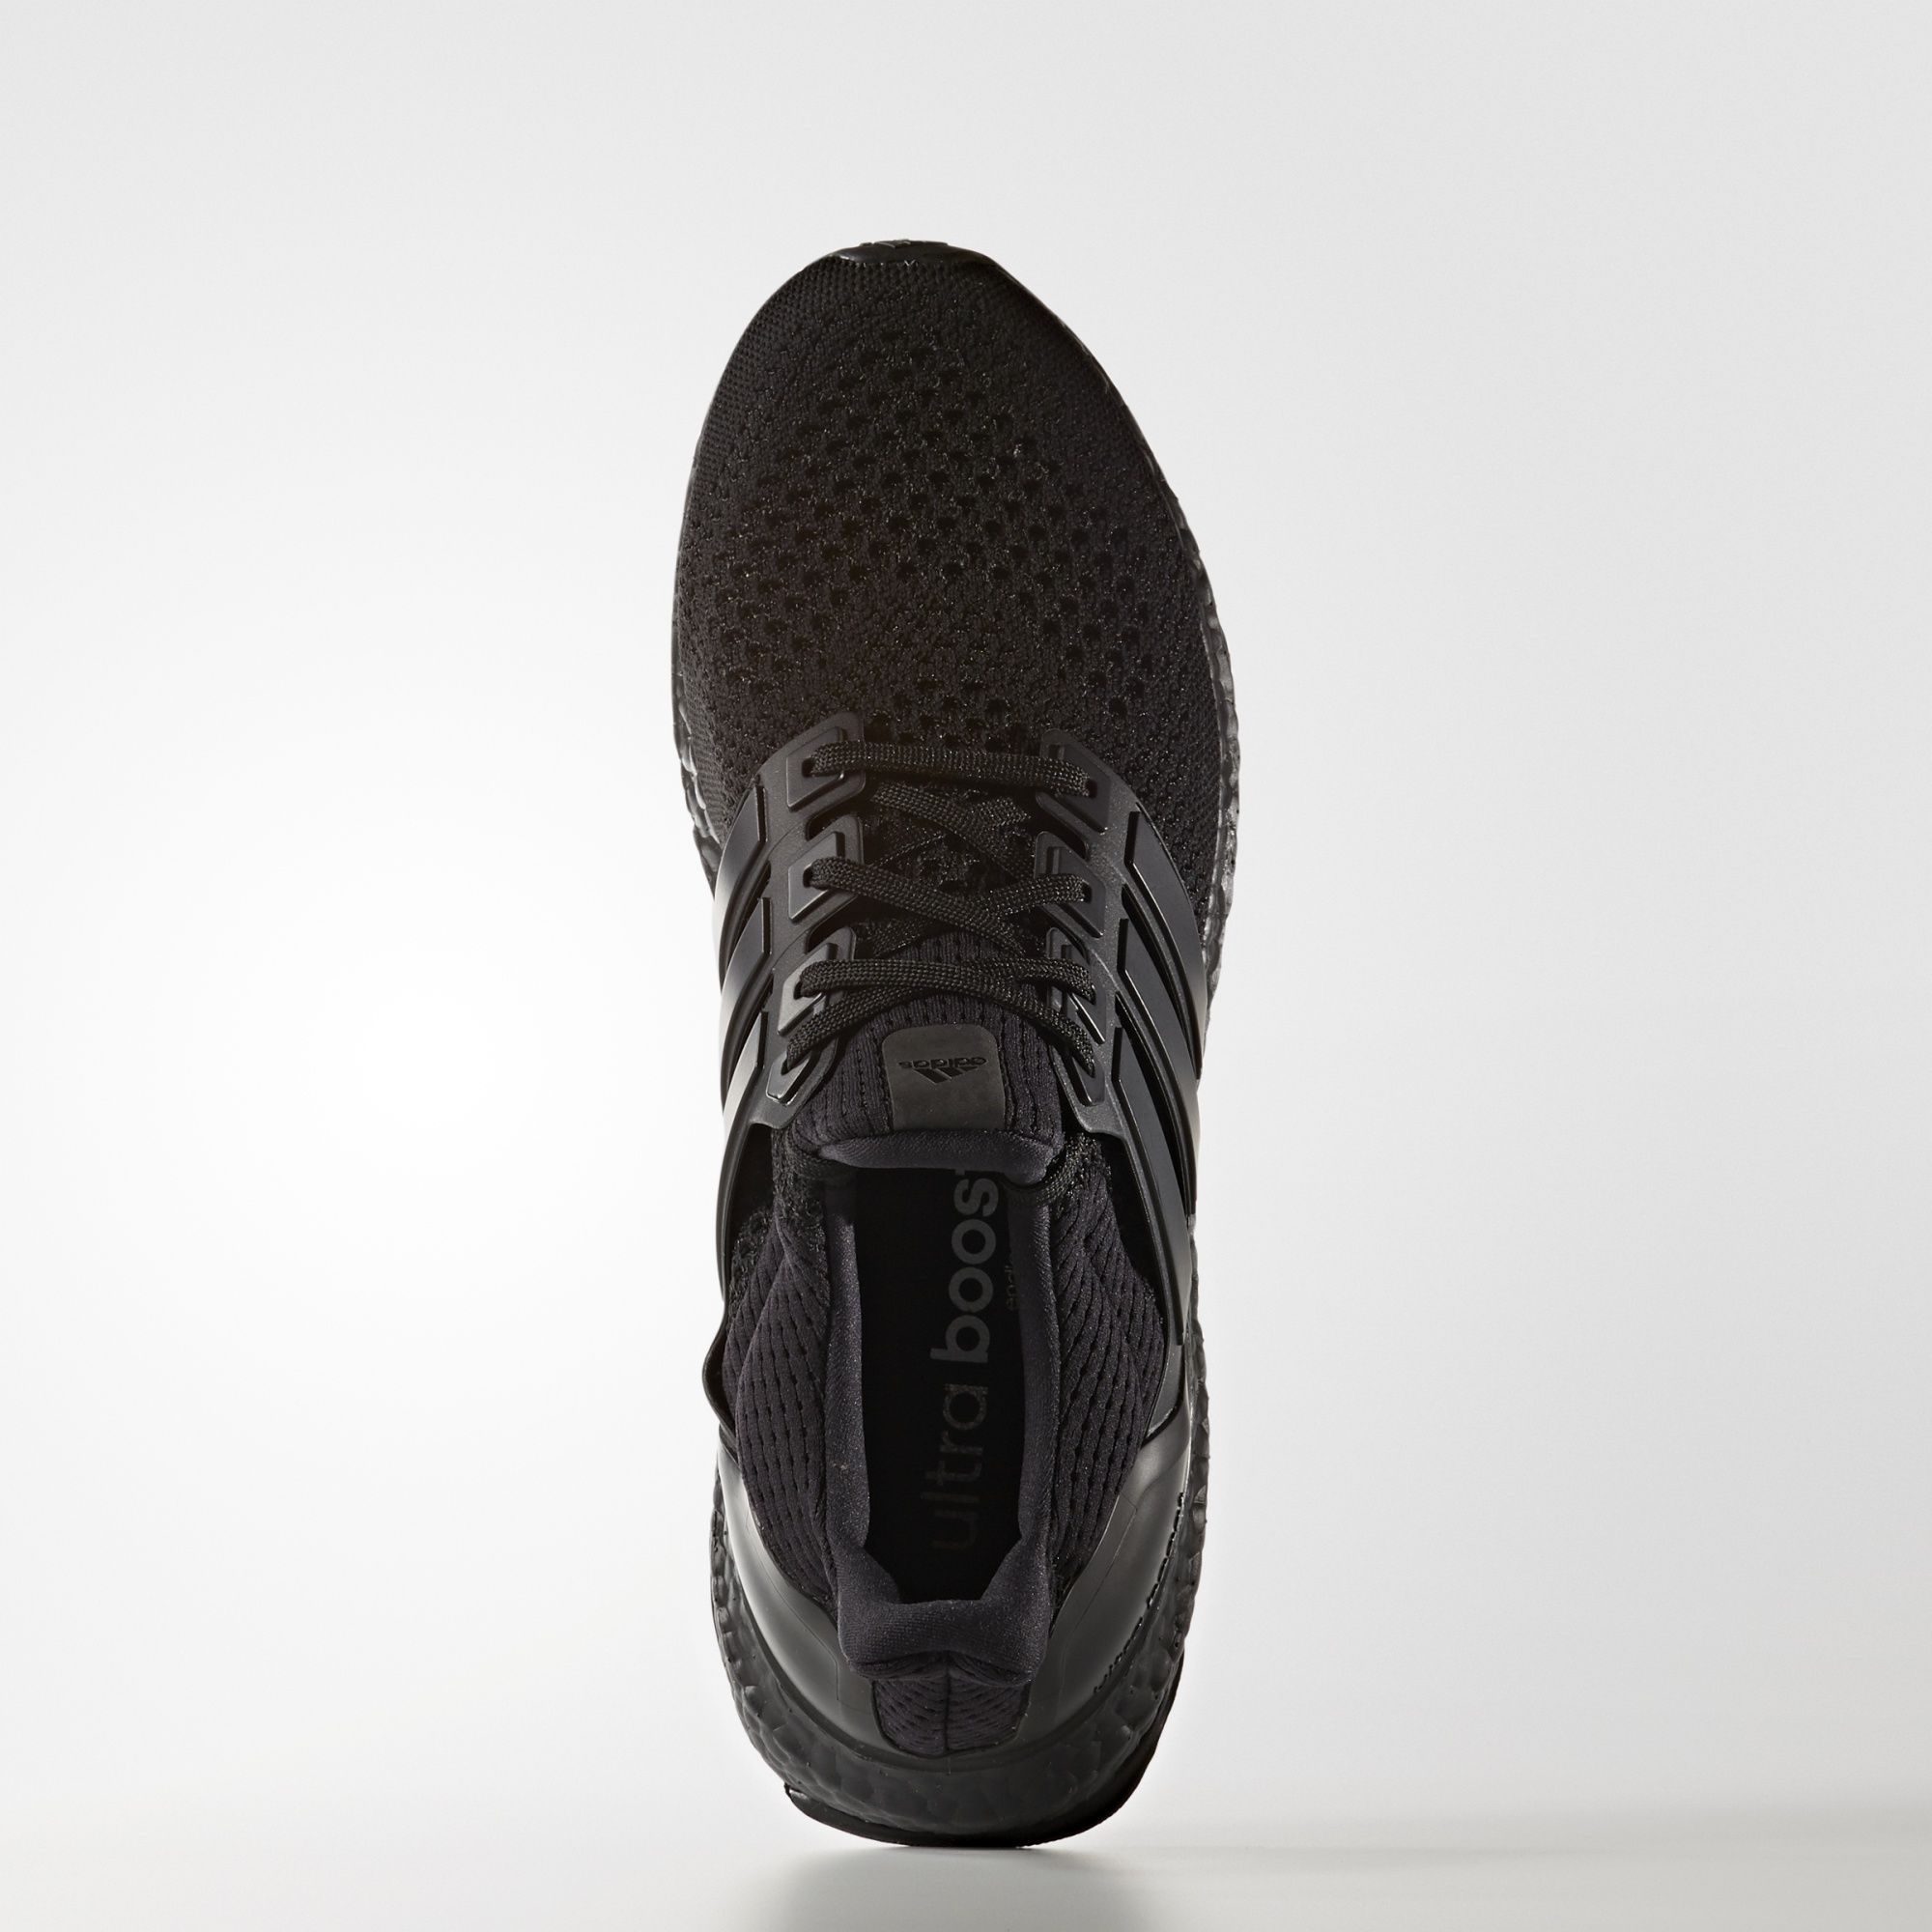 Adidas Ultra Boost LTD
« Triple Black »